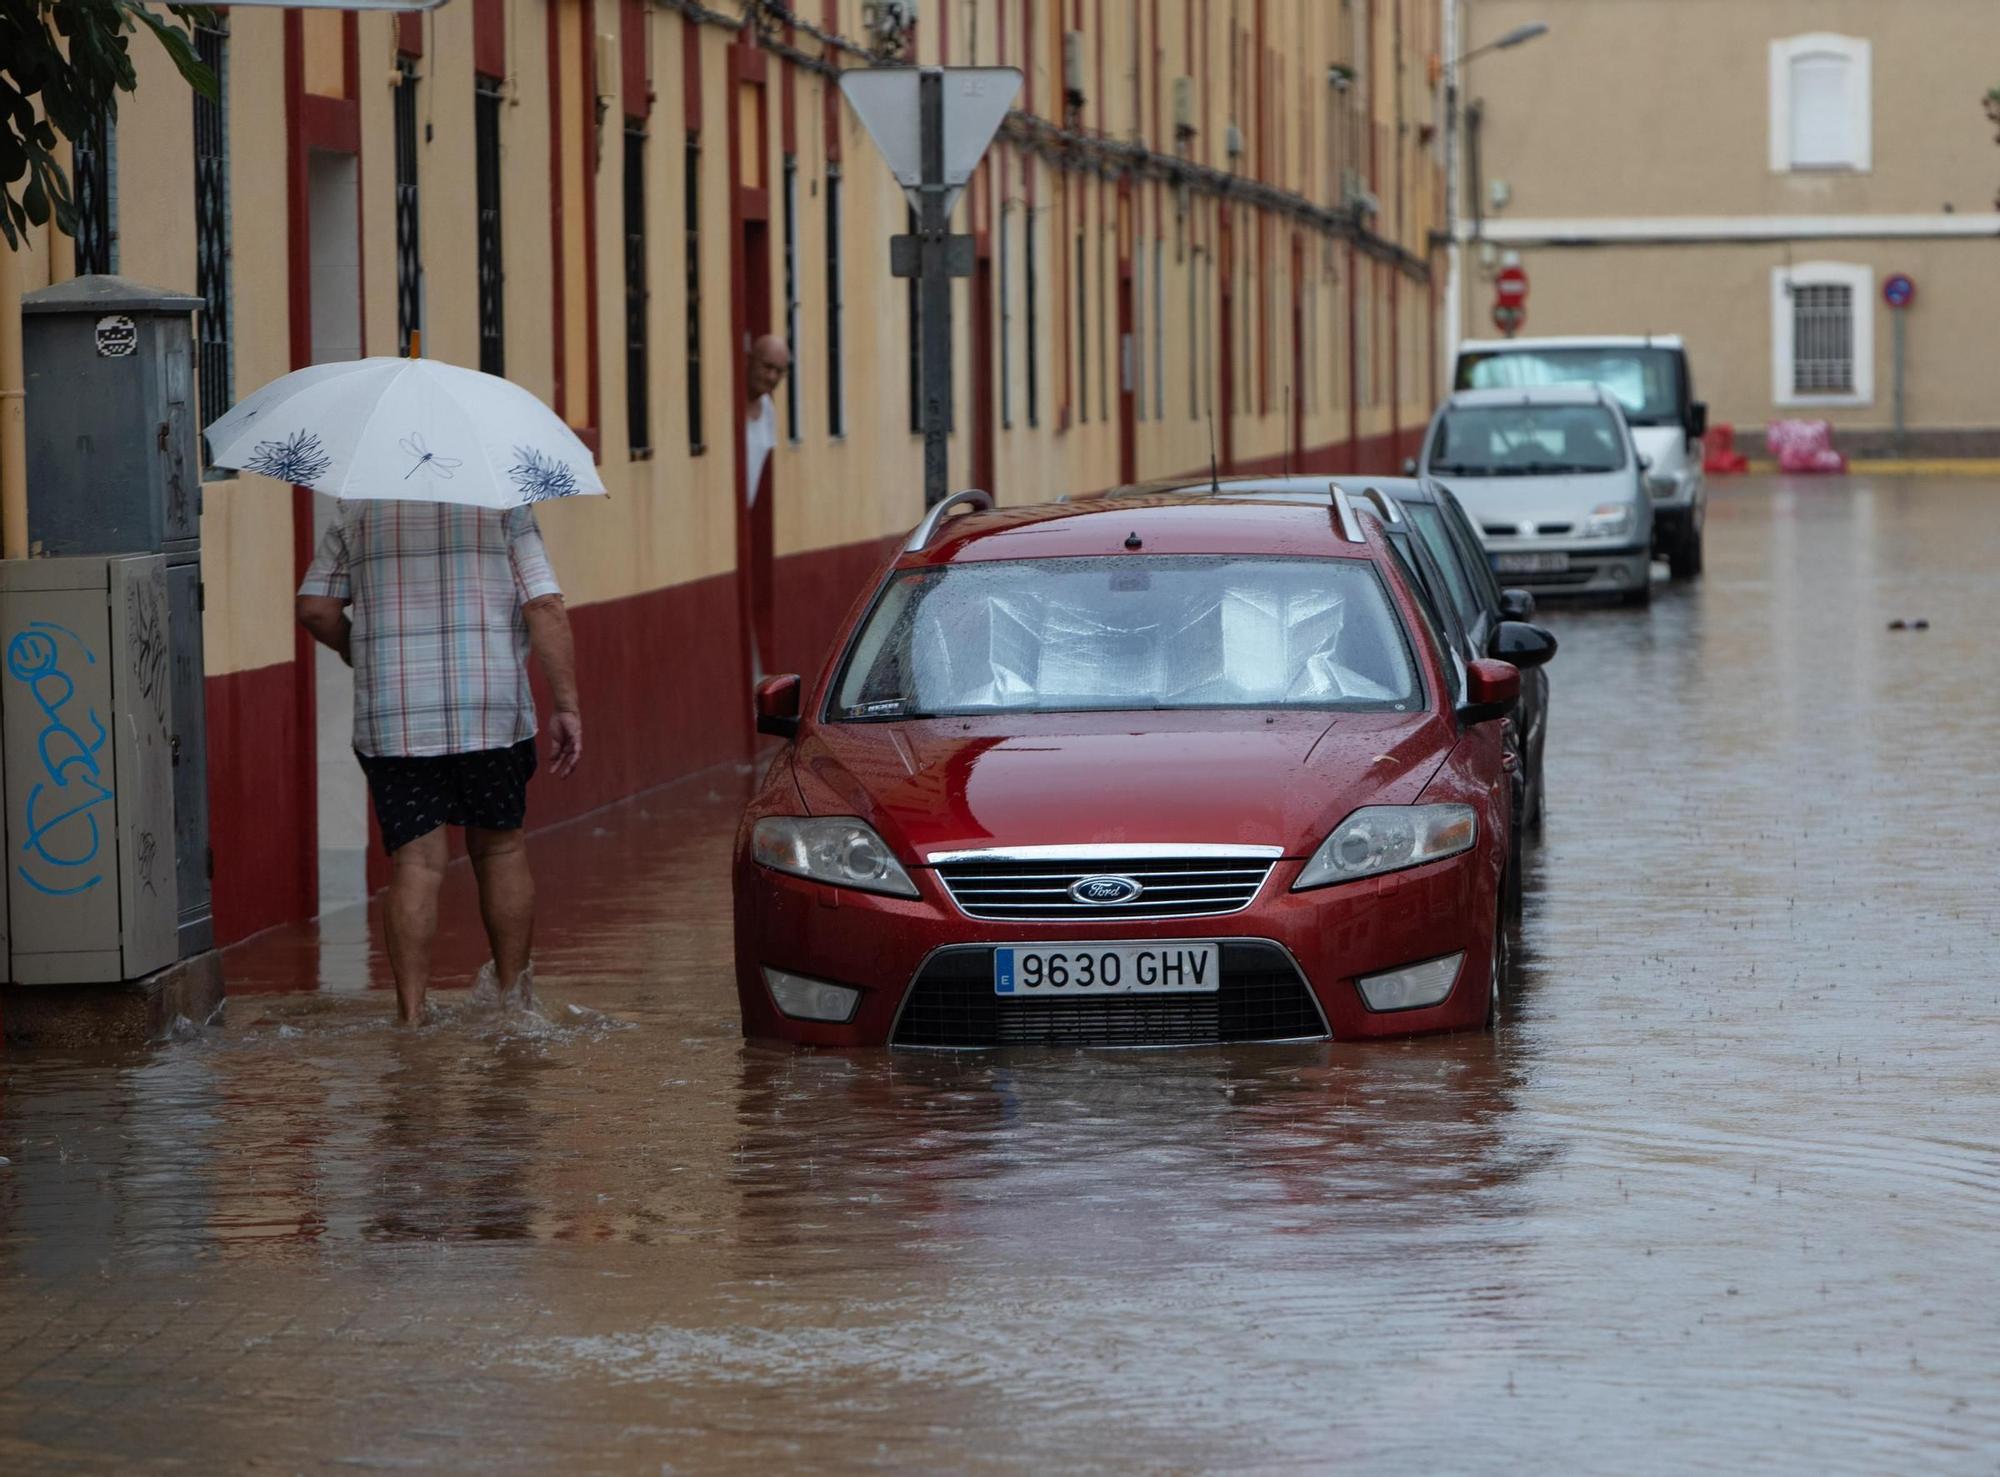 Lluvias torrenciales en Valencia en pleno verano